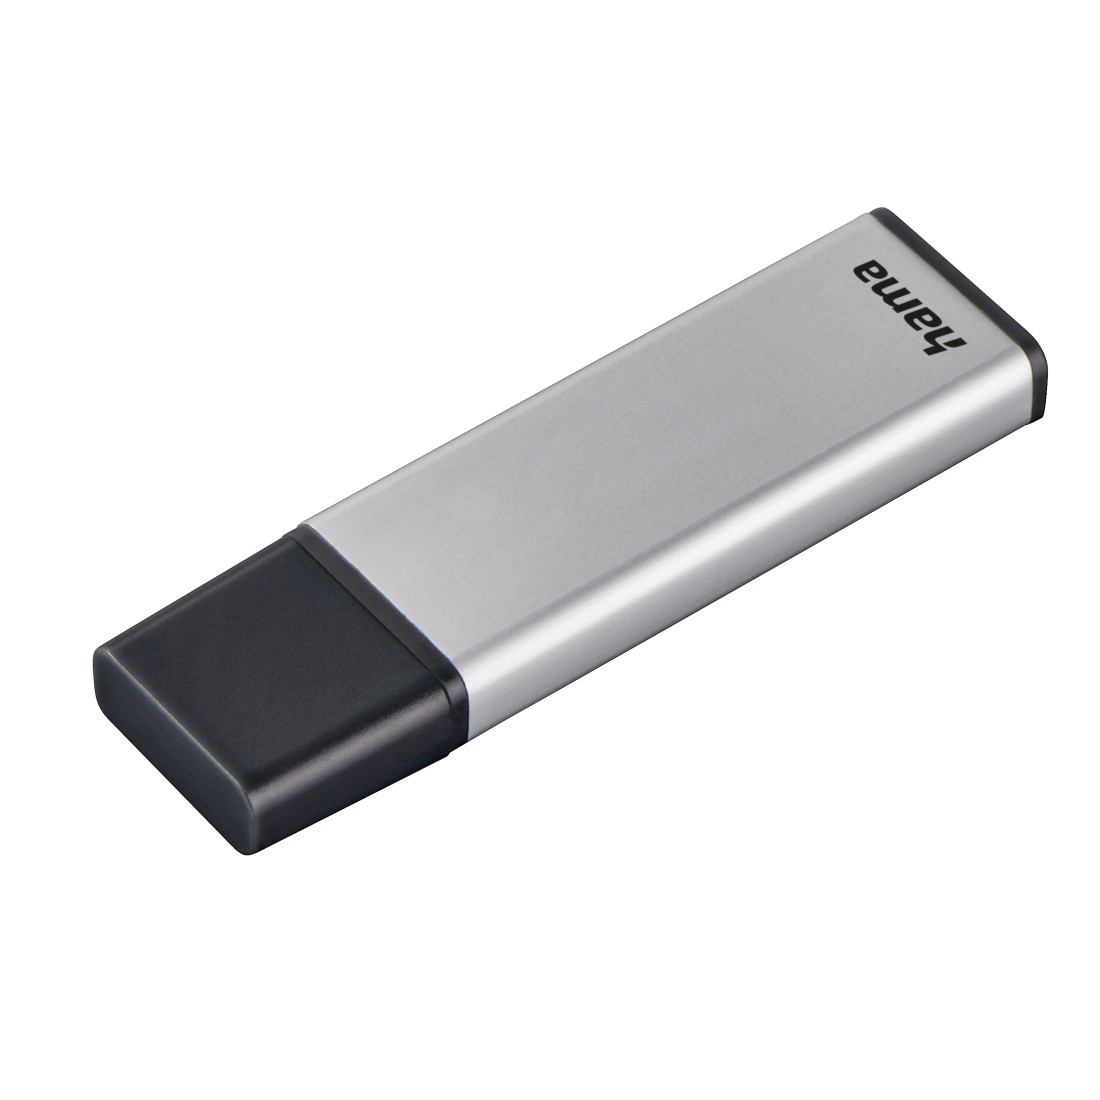 00181051 Hama "Classic" USB Stick, USB 3.0, 16 GB, 70 MB/s, silver